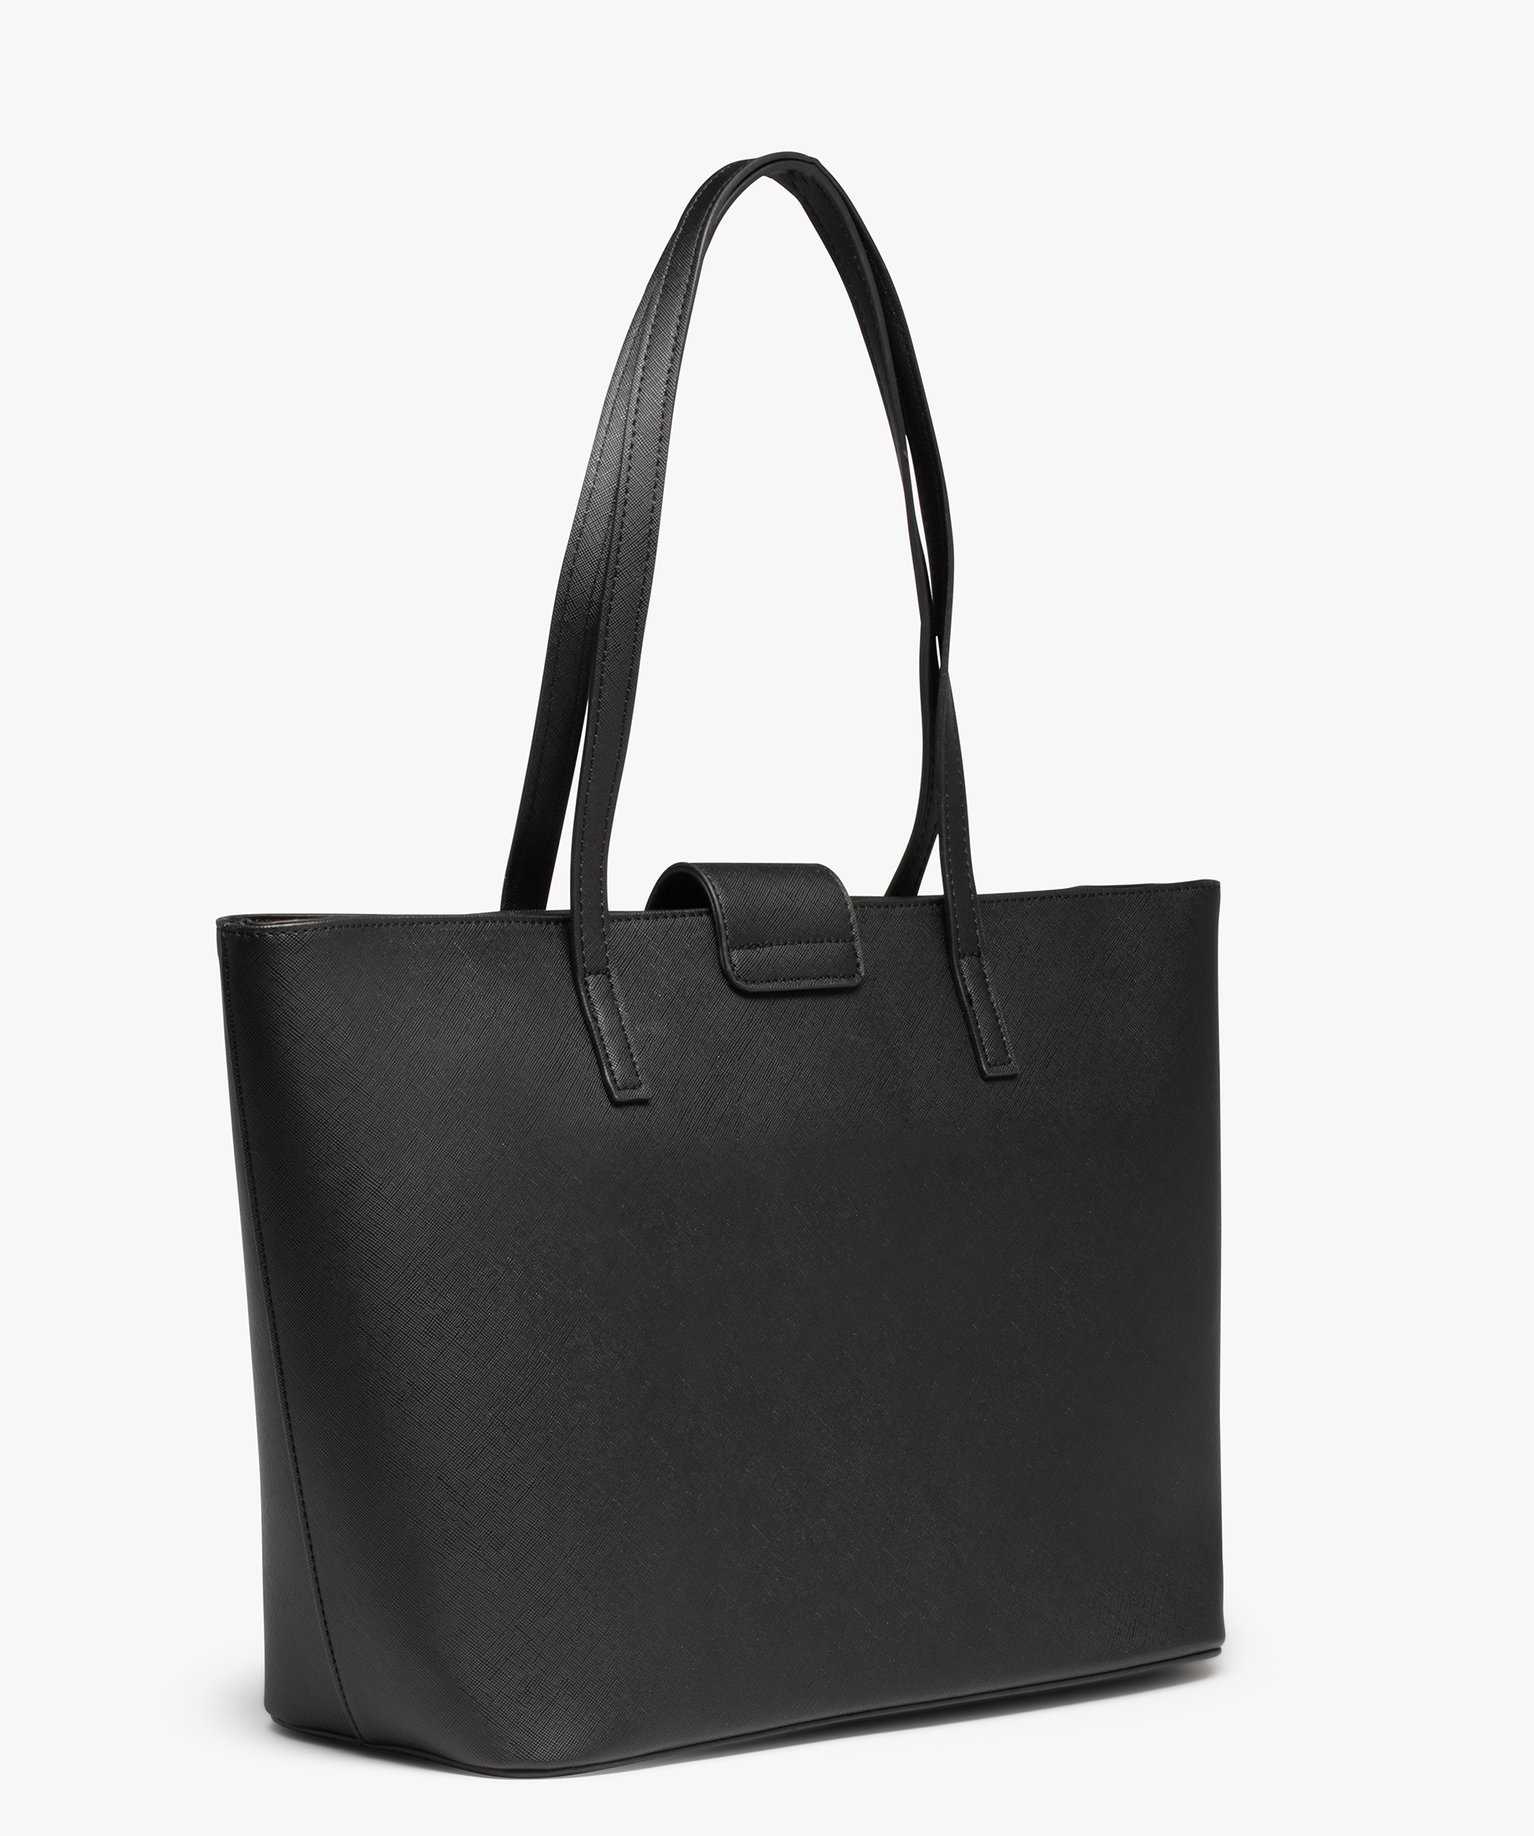 sac cabas rigide en matiere texturee femme noir cabas - grand volume femme